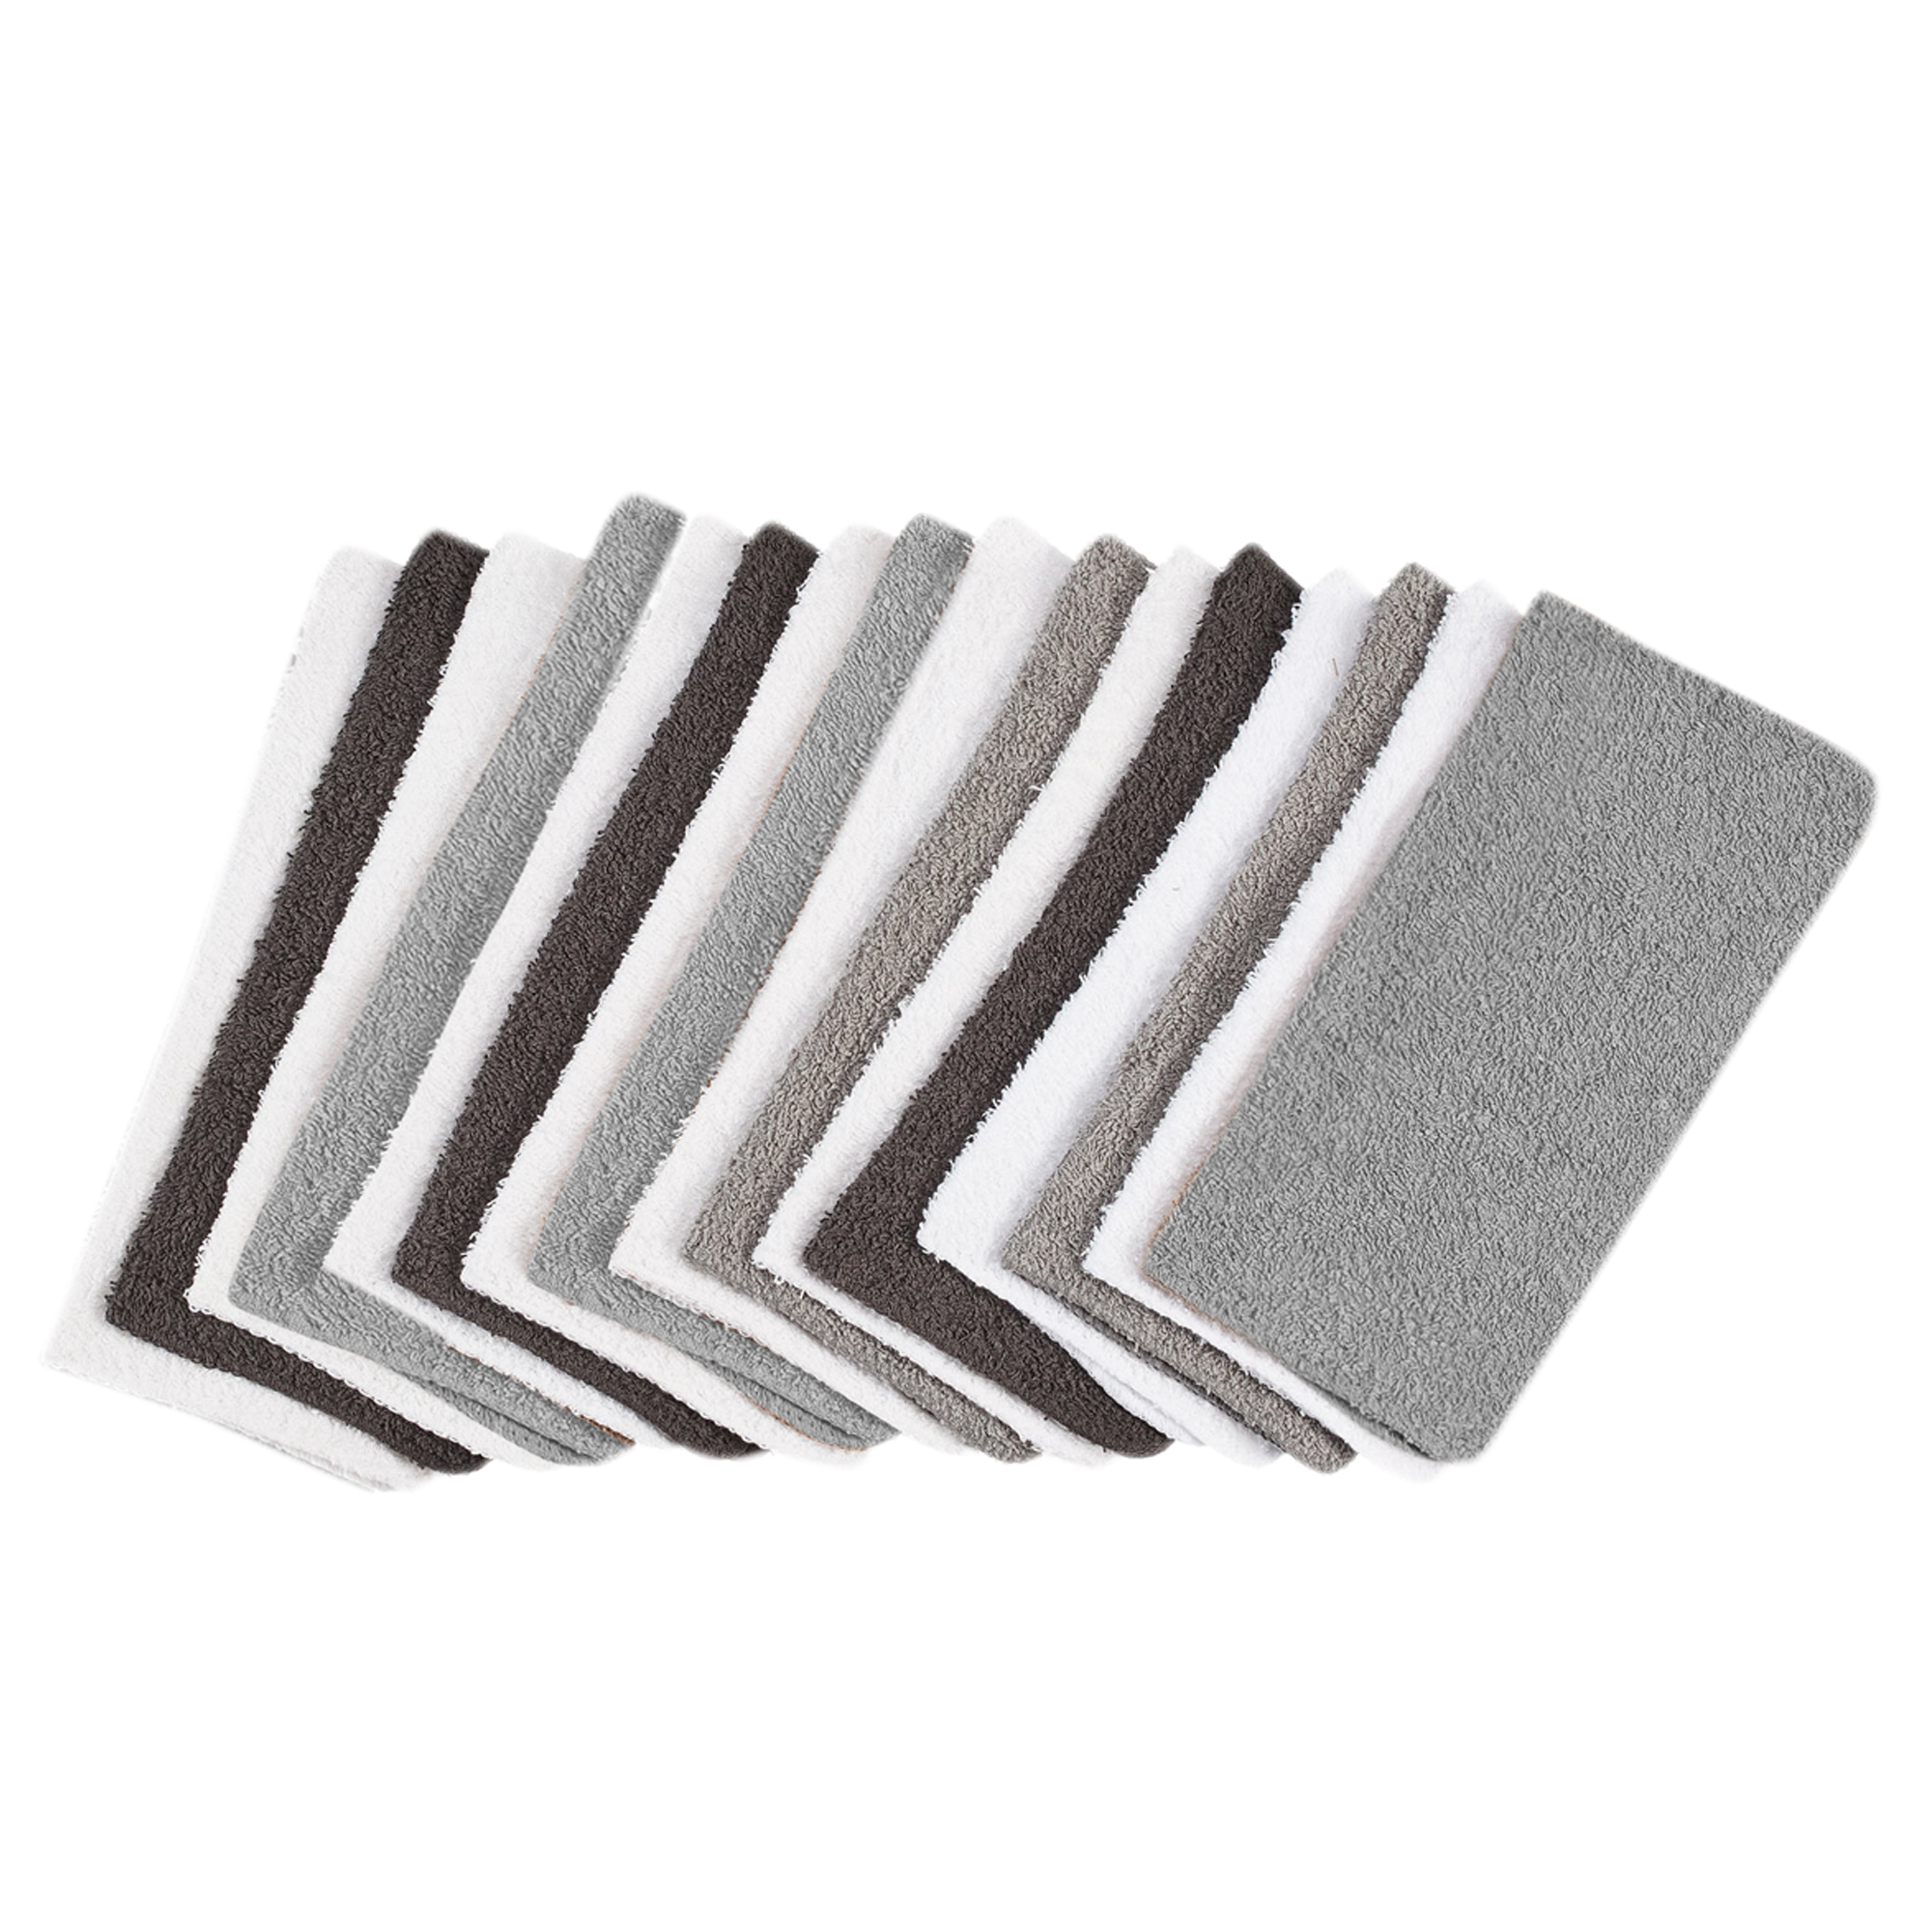 Mainstays 18-Pack Washcloth Bundle, Grey Multi - image 1 of 12